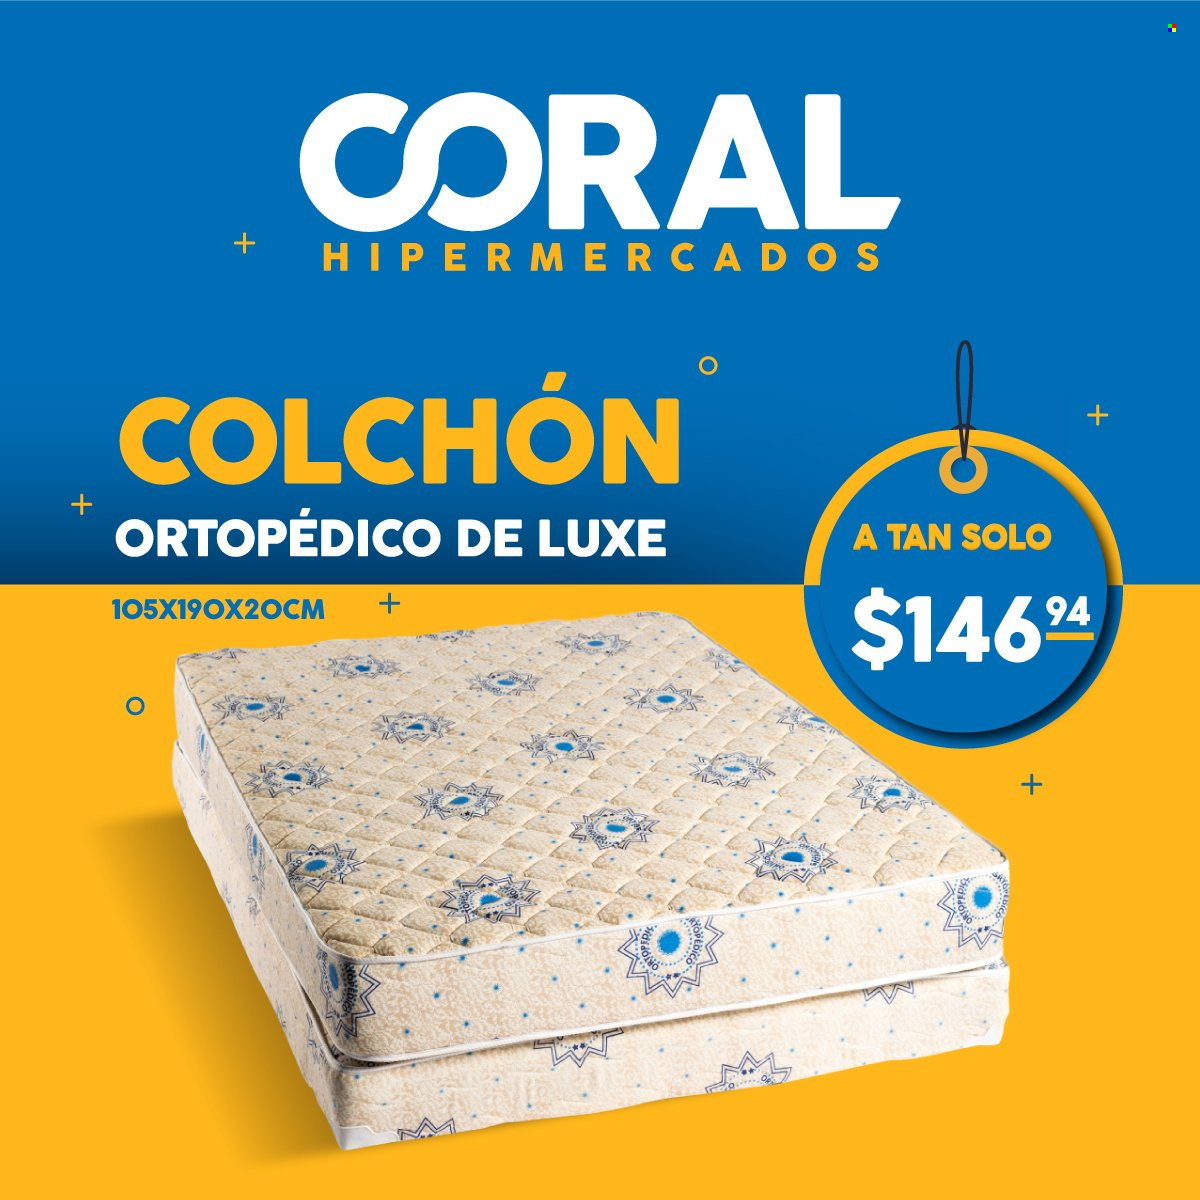 Catálogo Coral Hipermercados. Página 9.